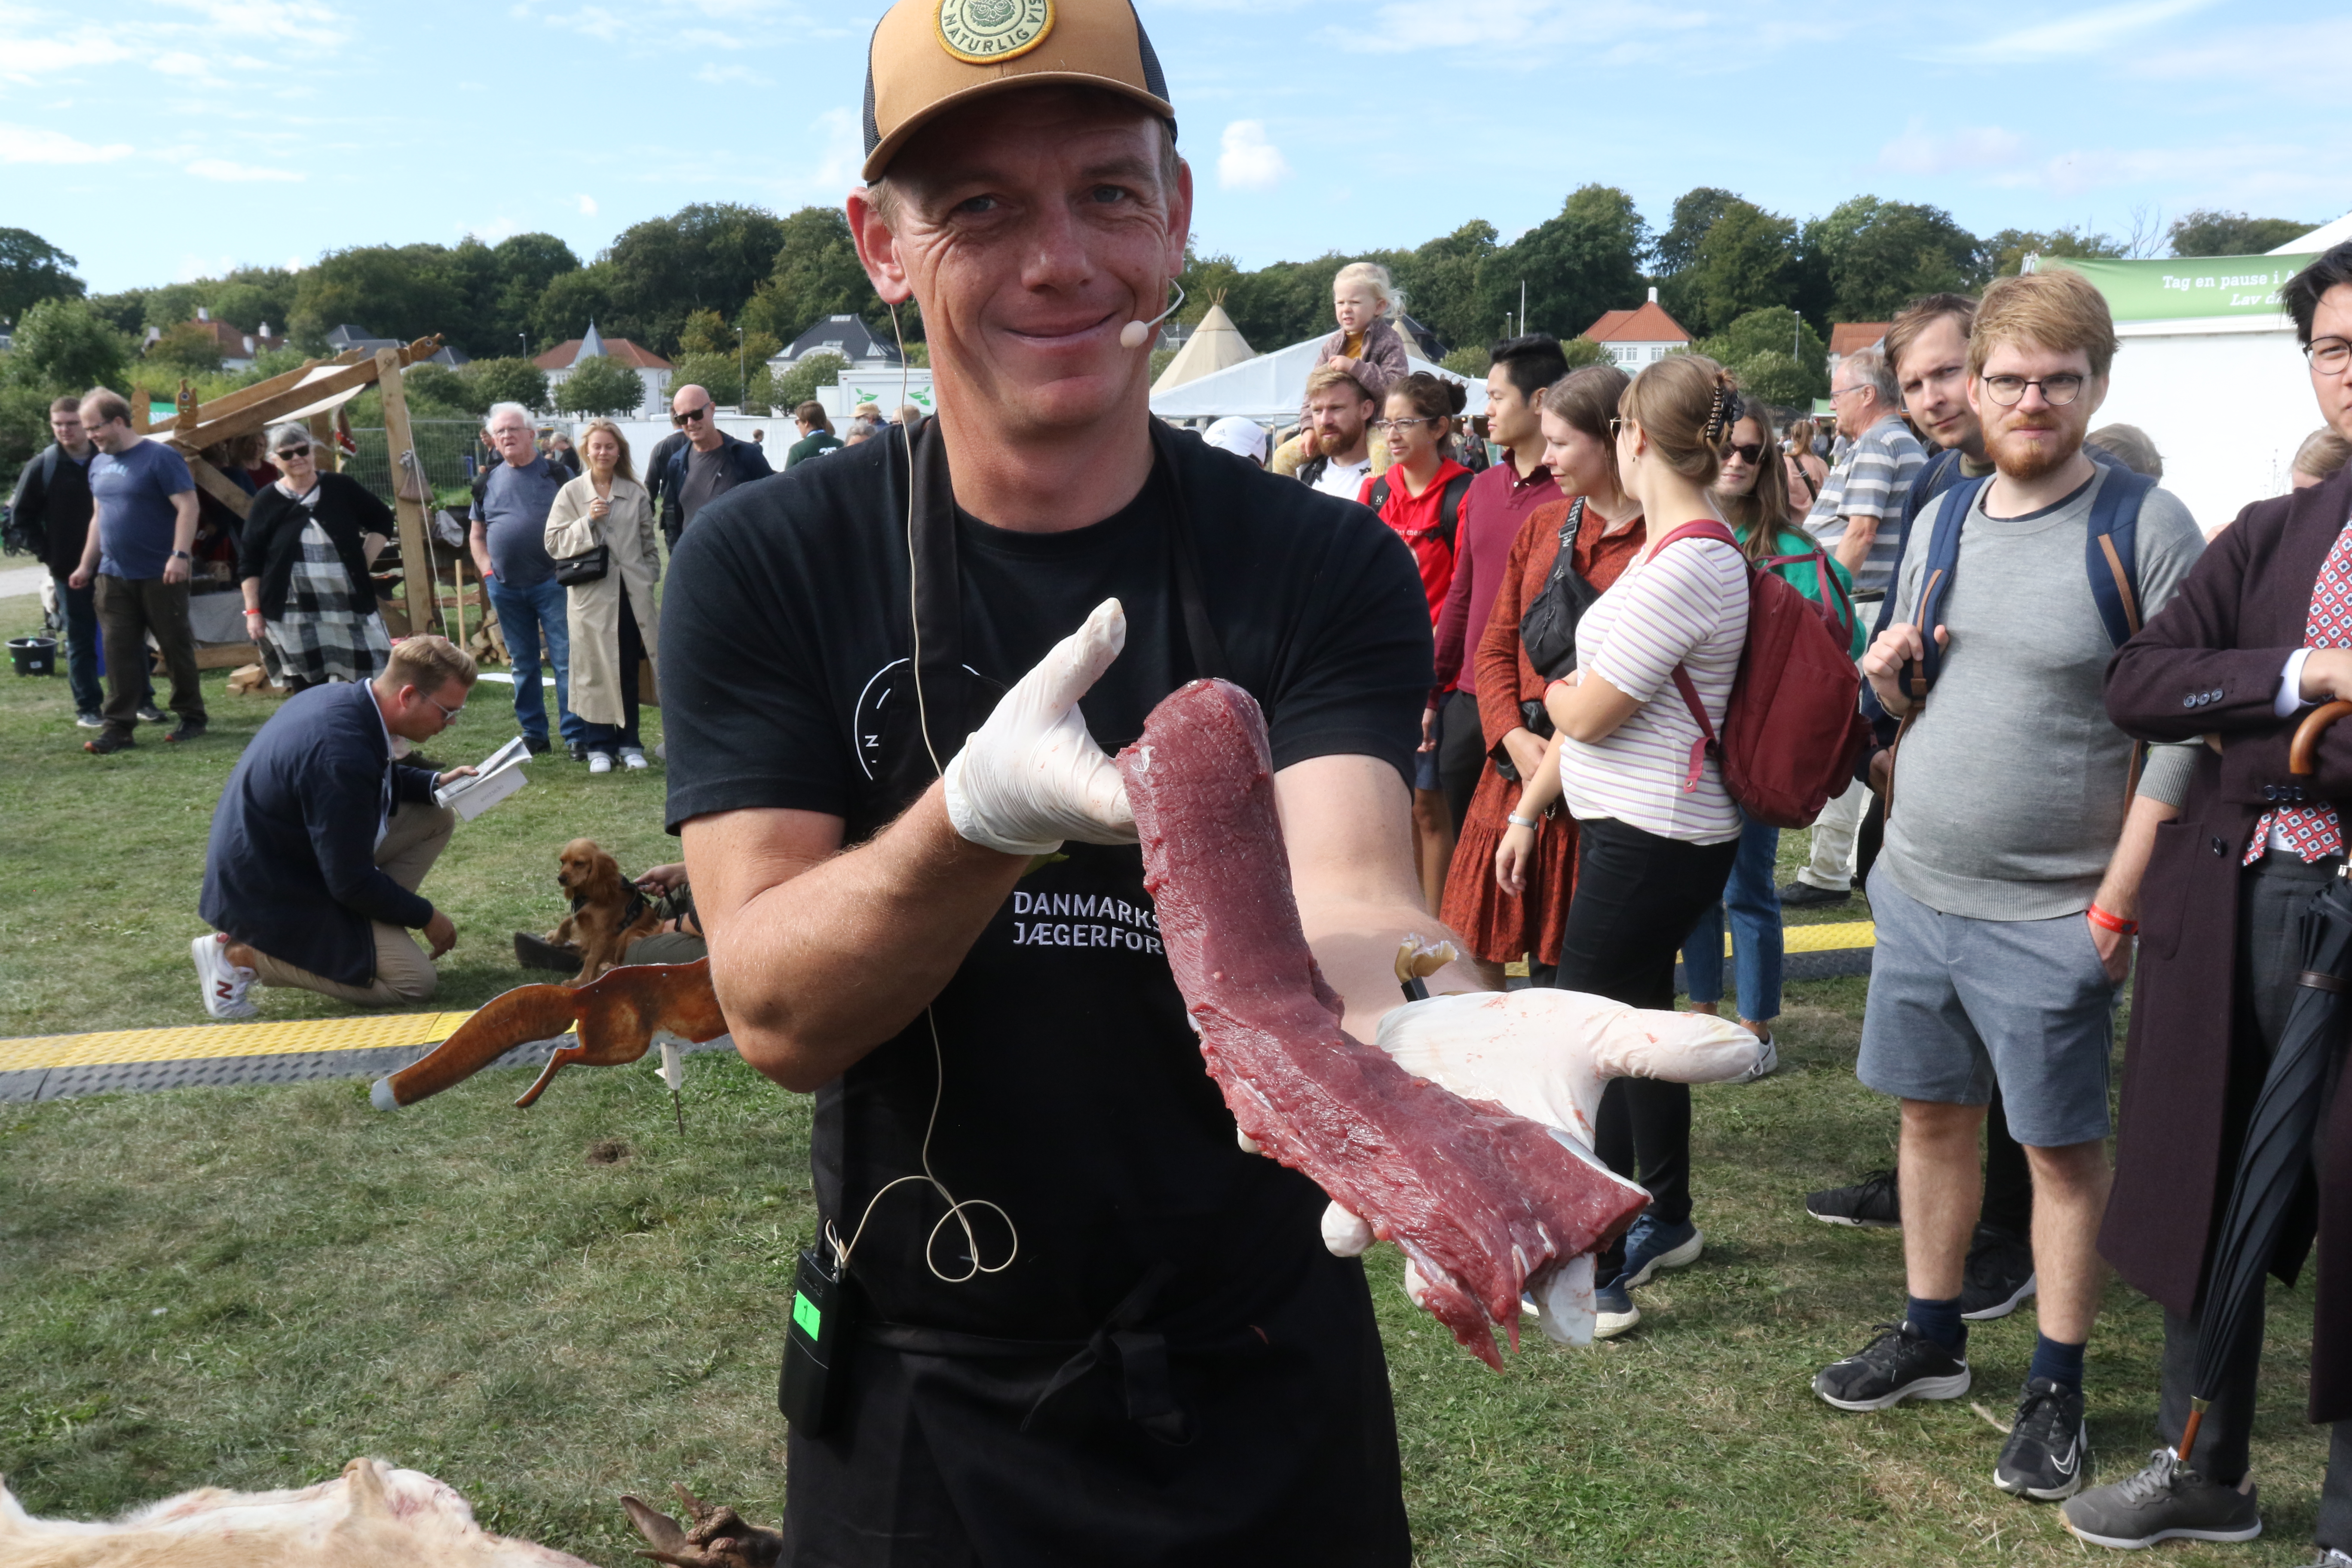 Naturvejleder ved DJ, Franz Holmberg, fremviser en rygfilet, som straks efter kom på grillen og blev til lækker vildtmad.